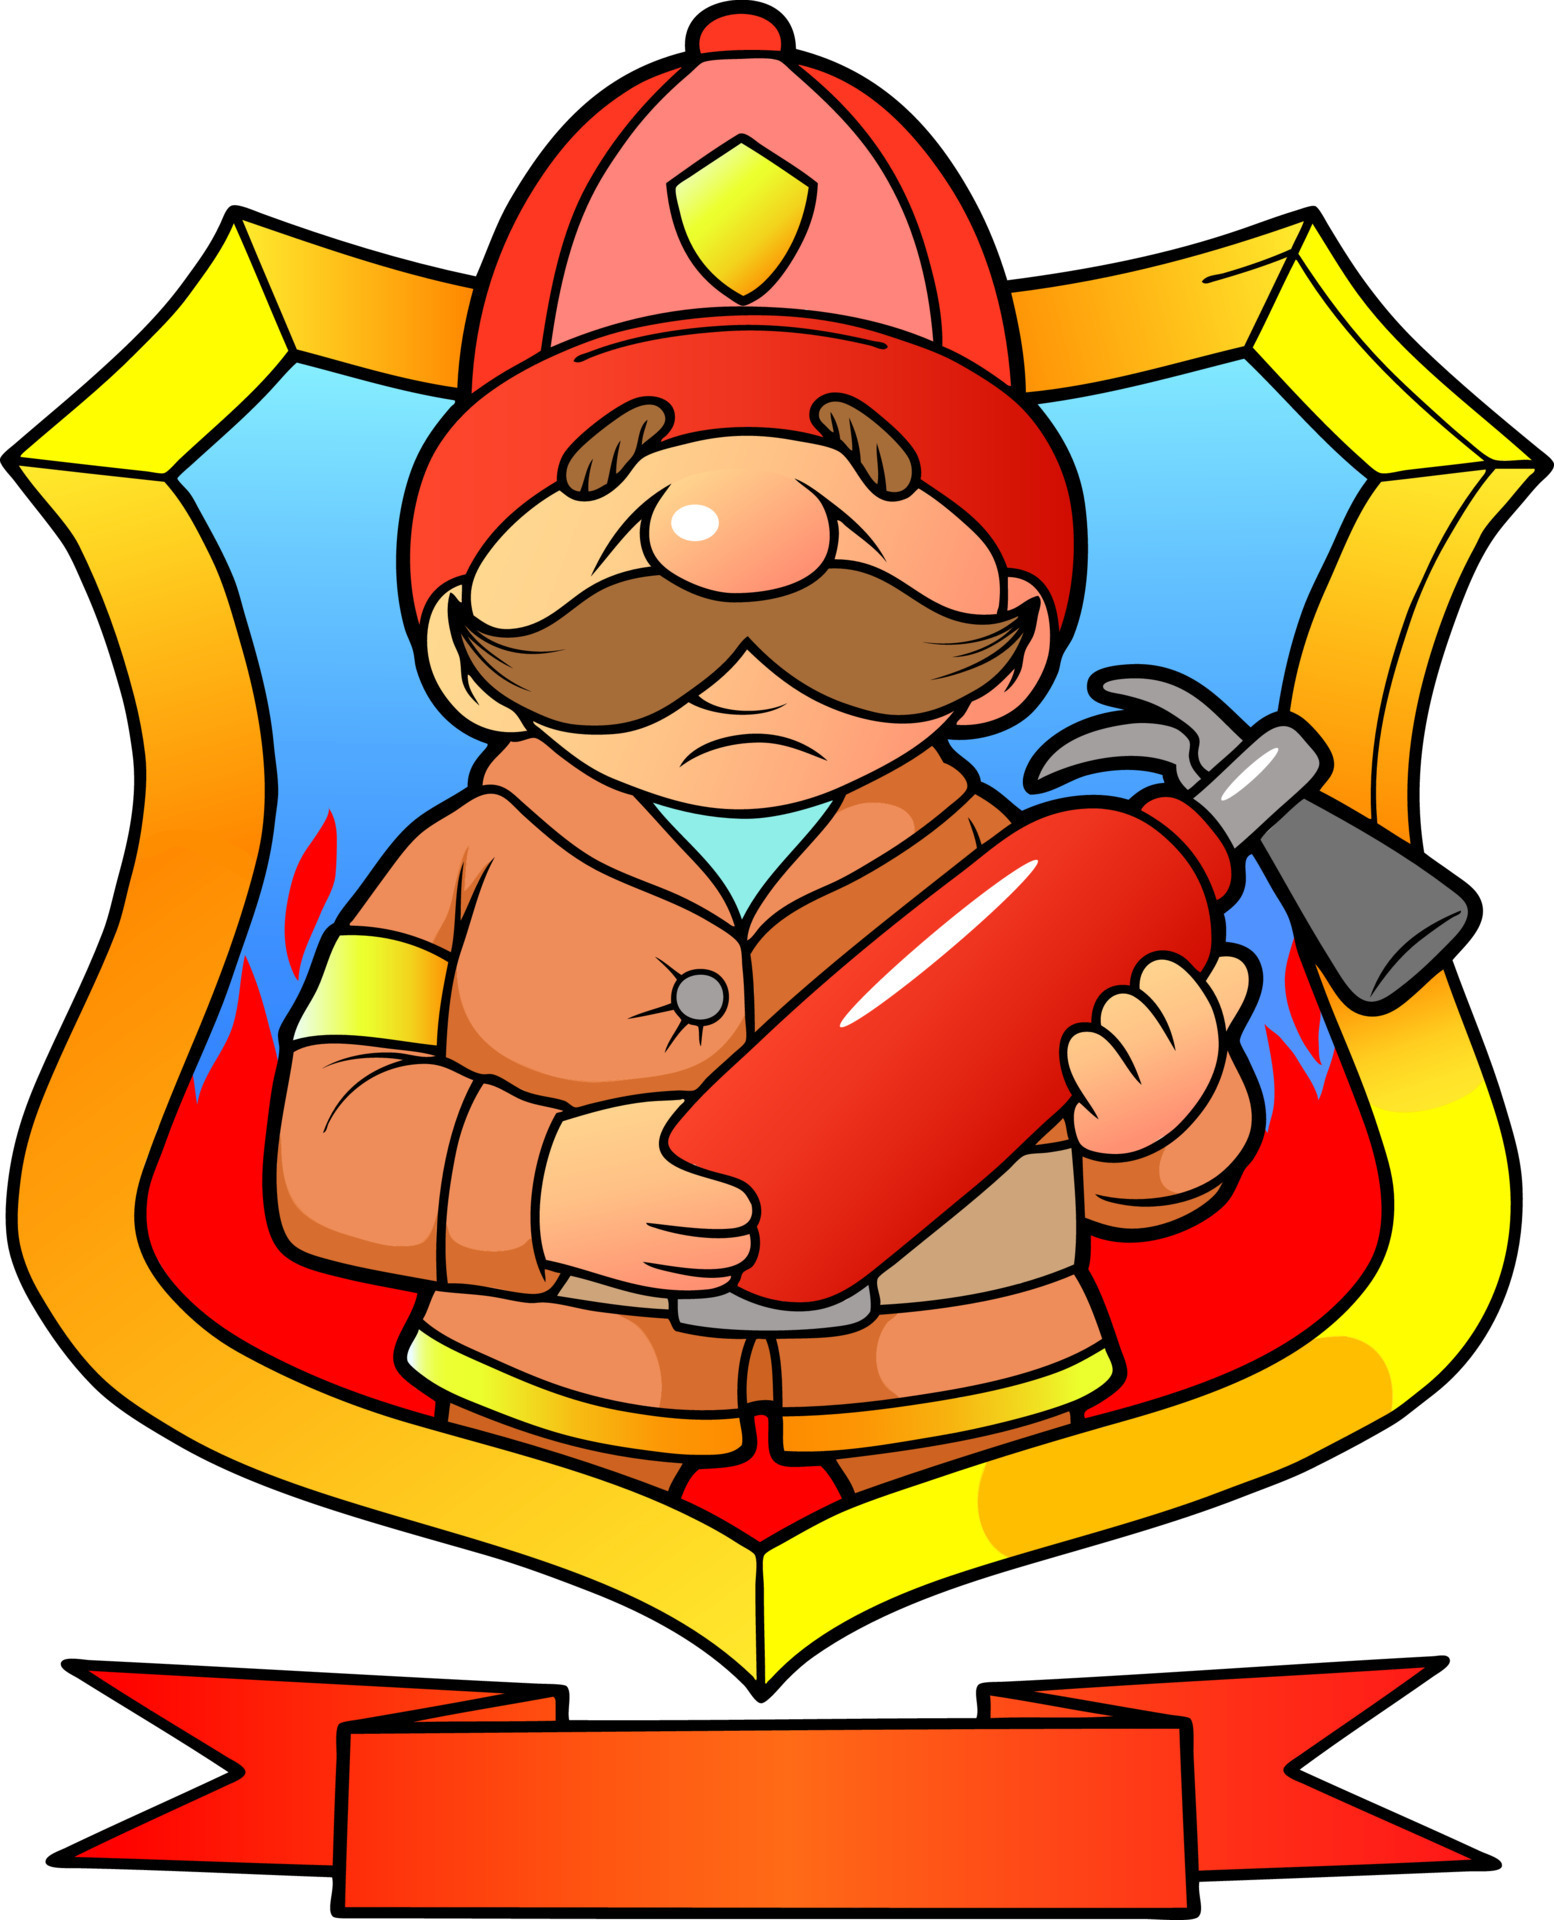 Эмблема пожарных